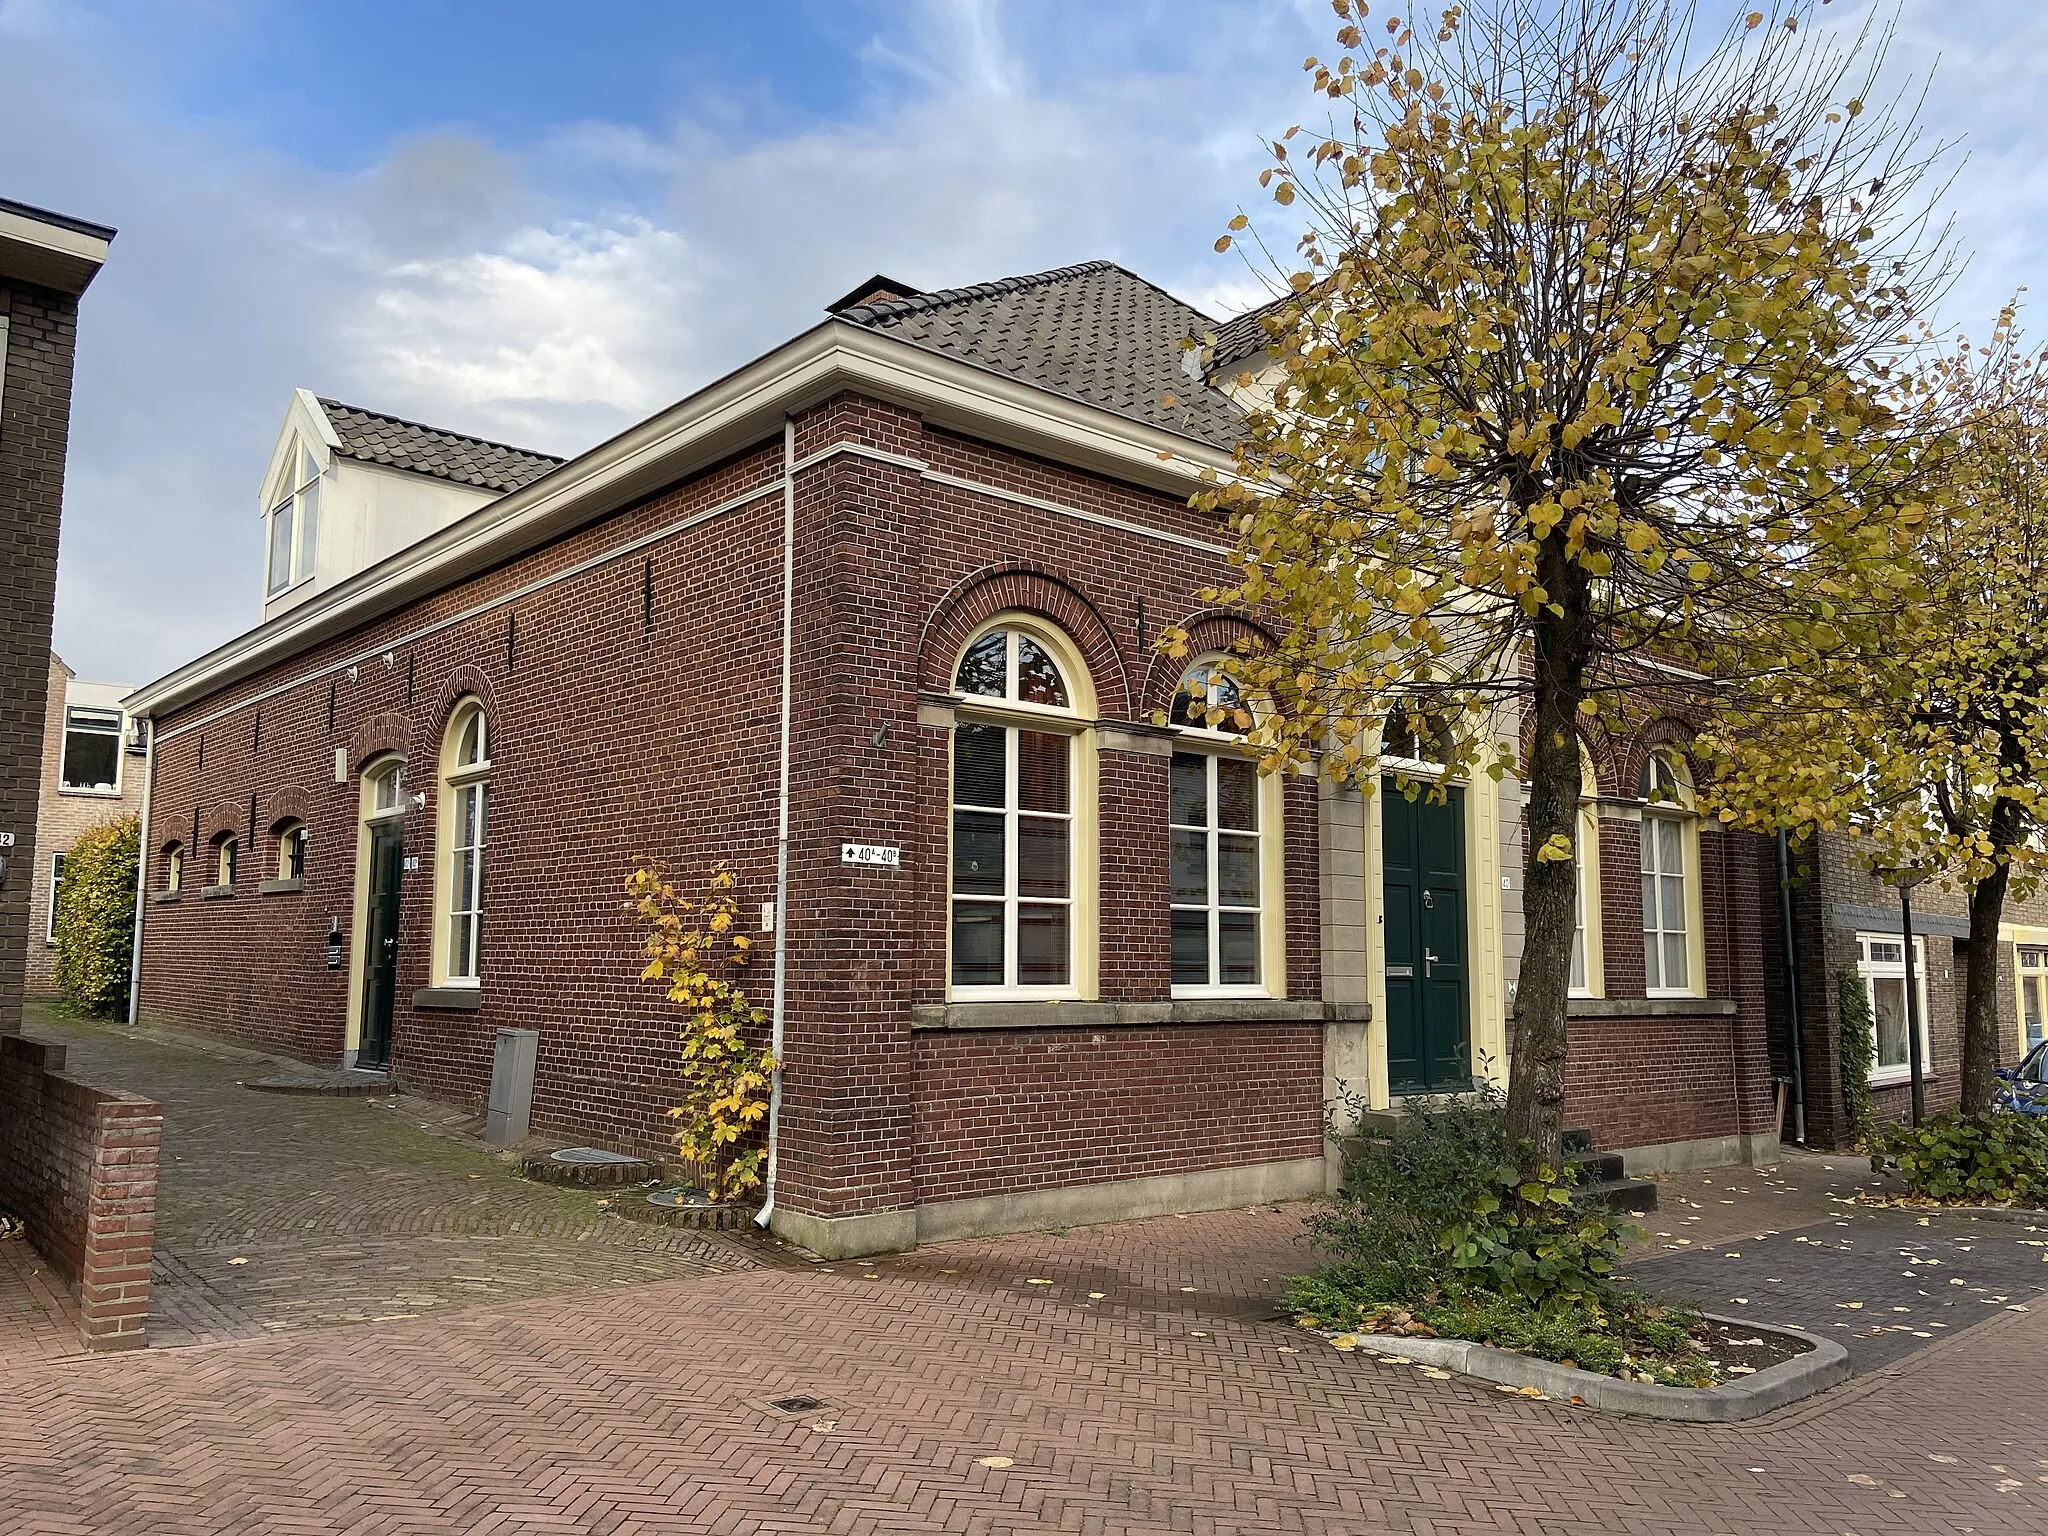 Photo showing: Voormalige gevangenis van Aalten aan de Prinsenstraat. Werd in 1861 gebouwd als het "Kantonnaal Huis van Bewaring" n.a.v. een Koninklijk Besluit uit 1841. In het pand bevonden zich zes cellen. De gevangenis werd in 1886 gesloten. In 1987 werd het pand gerestaureerd en omgezet naar een woonhuis.